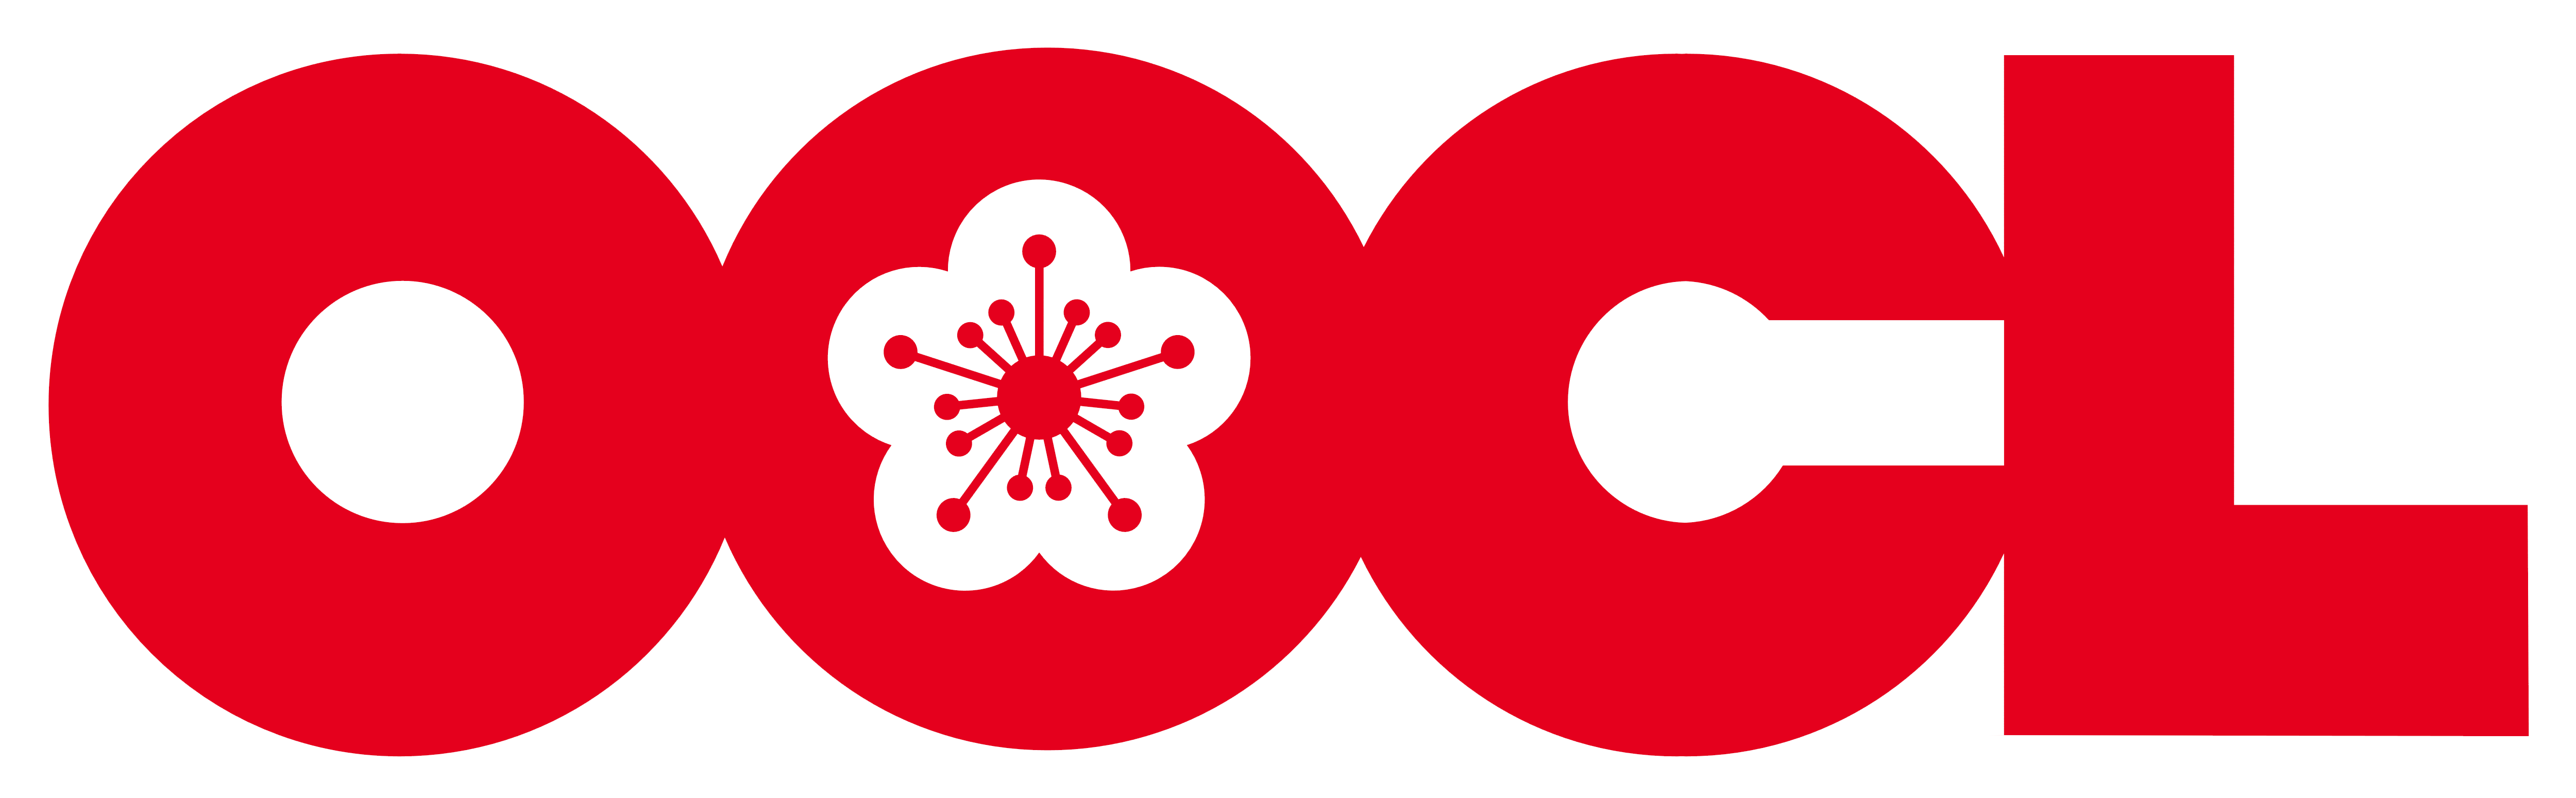 OOCL logo, logotype, emblem